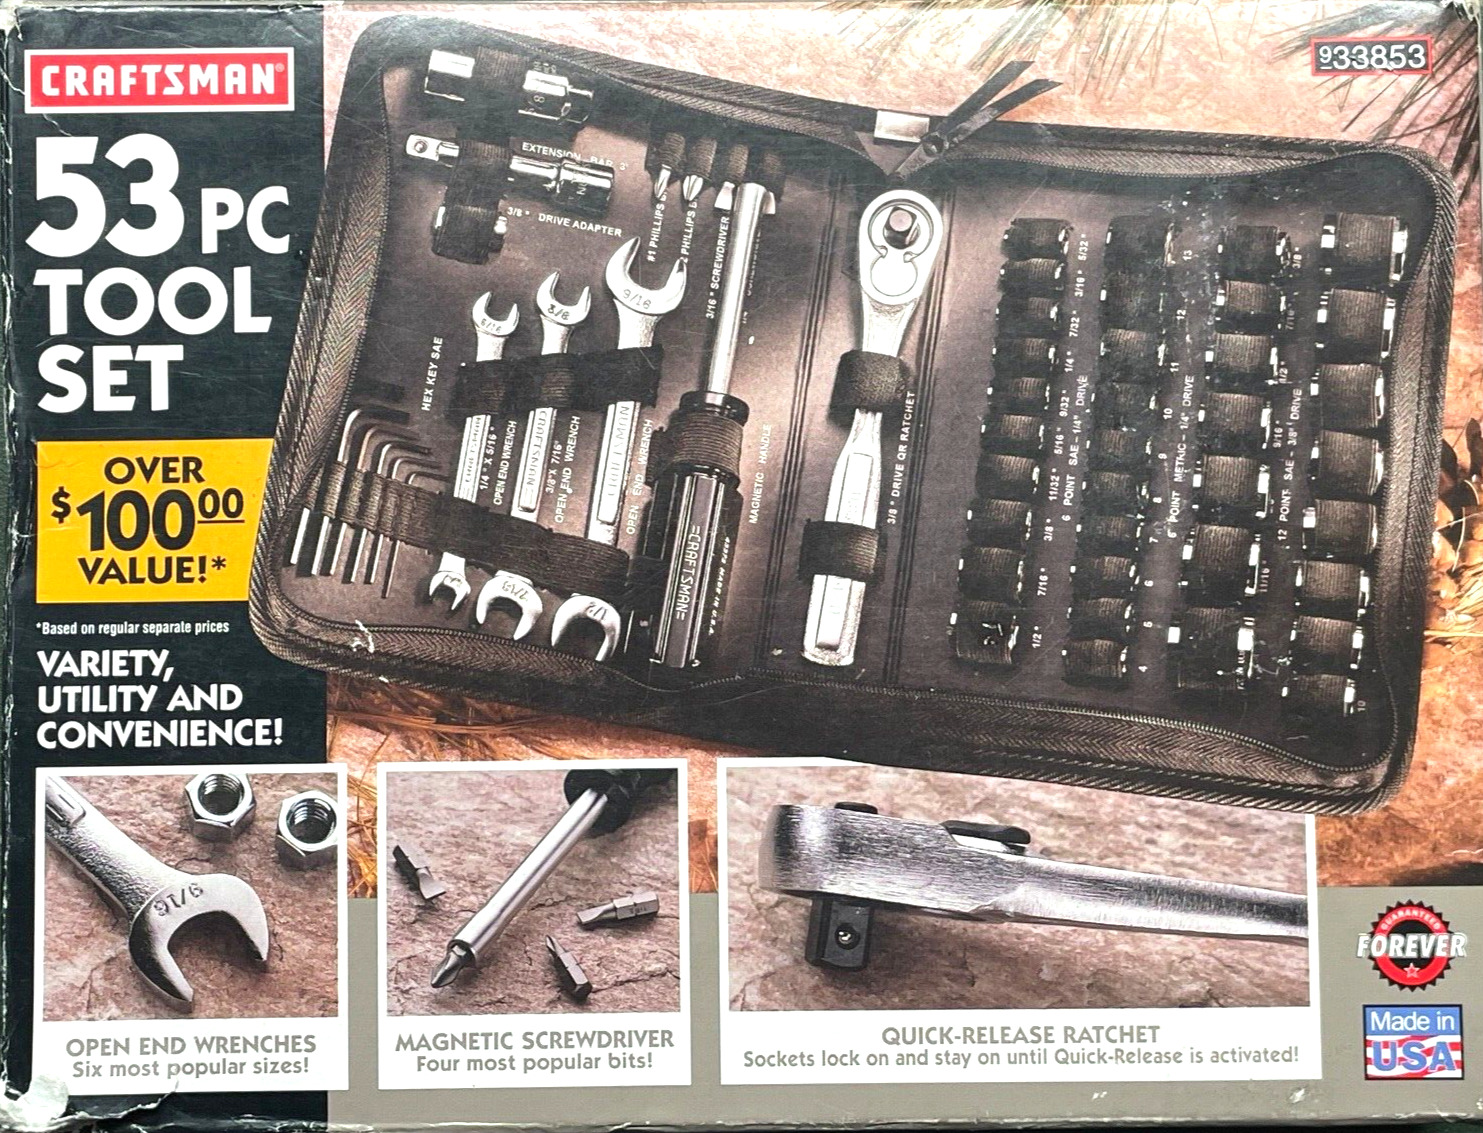 Vintage NOS Craftsman 53pc SAE / Metric Tool Set 33853 Made In USA